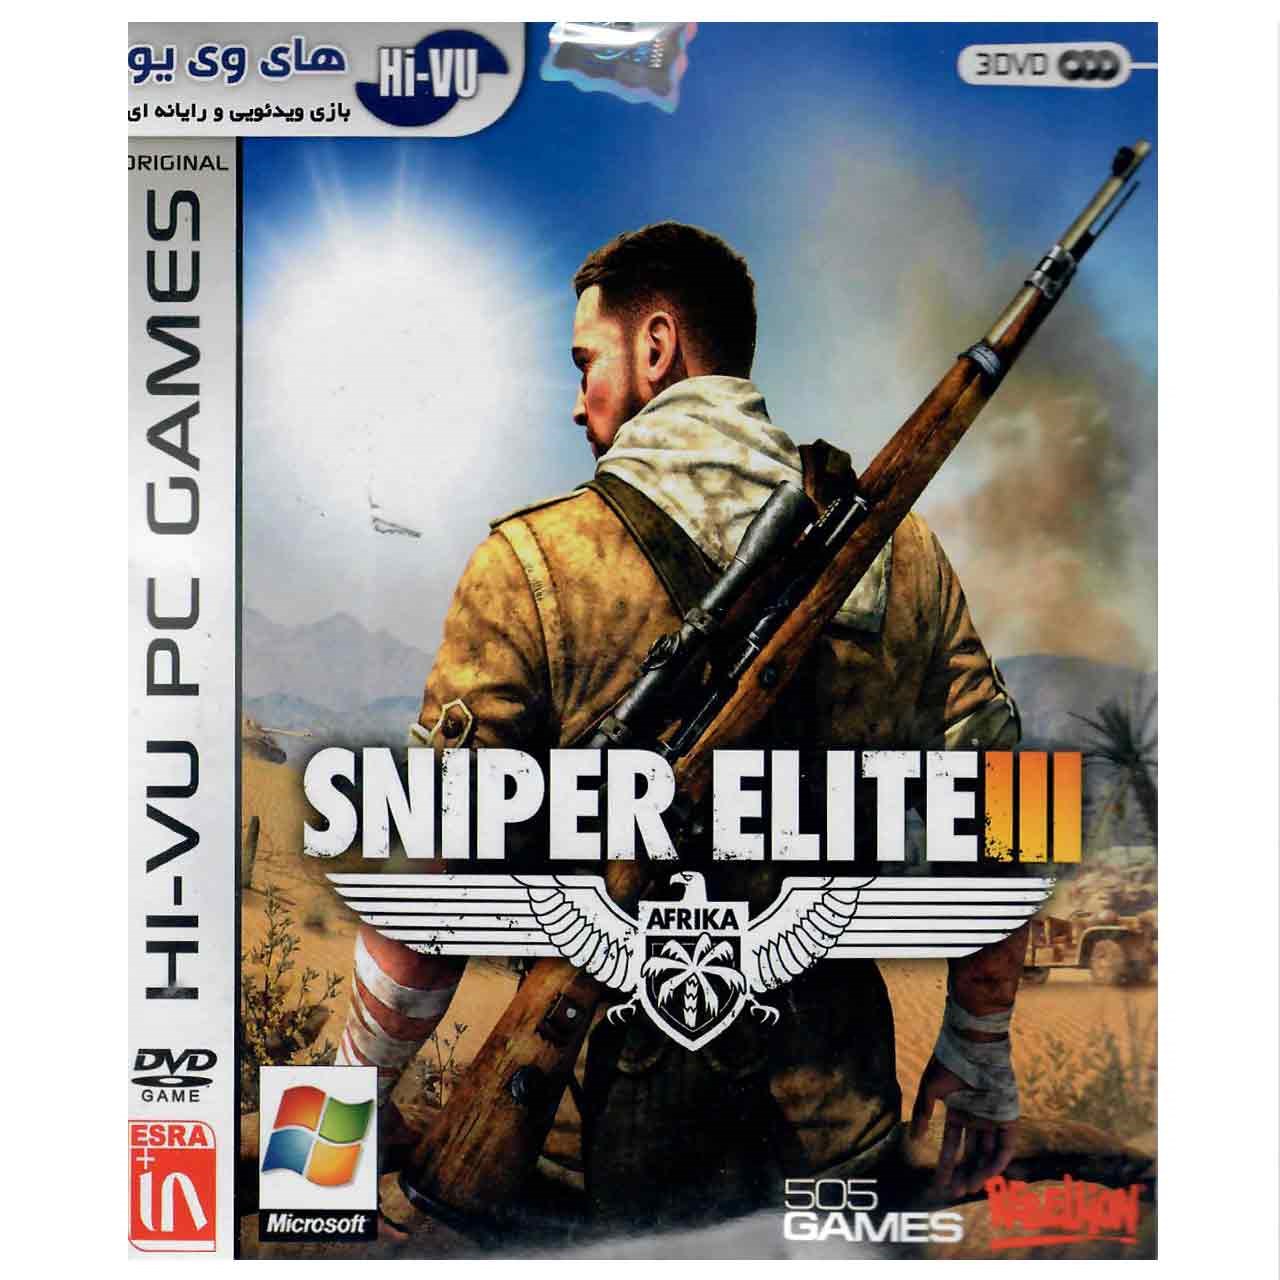 sniper elite 3 prices